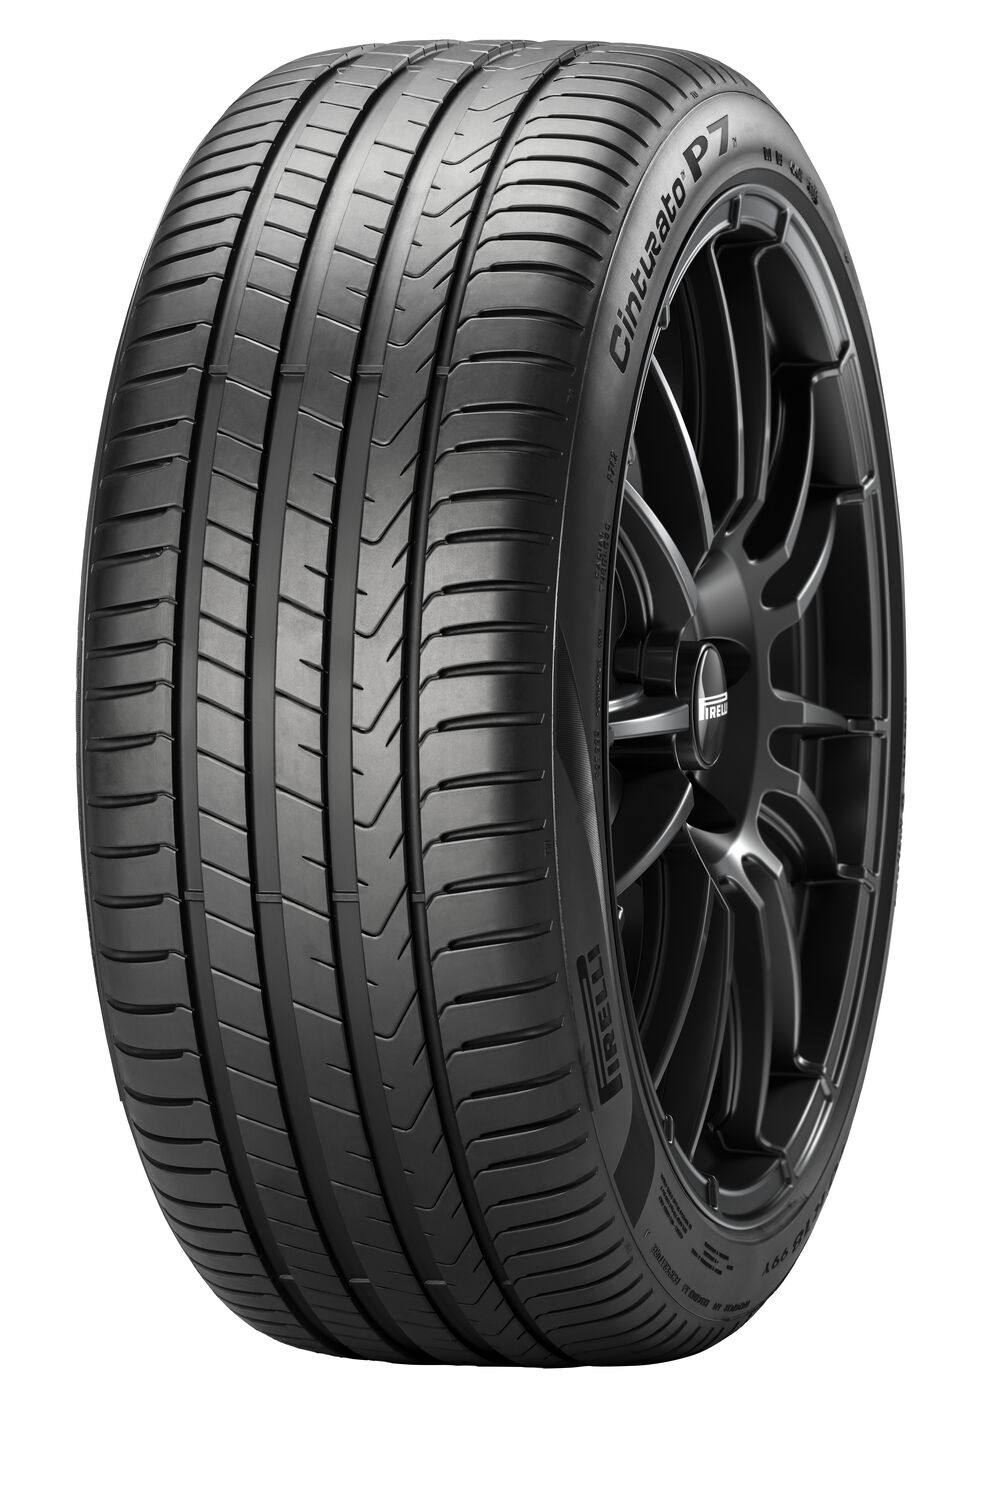 Gomme Nuove Pirelli 225/45 R18 95Y P7C2 XL pneumatici nuovi Estivo